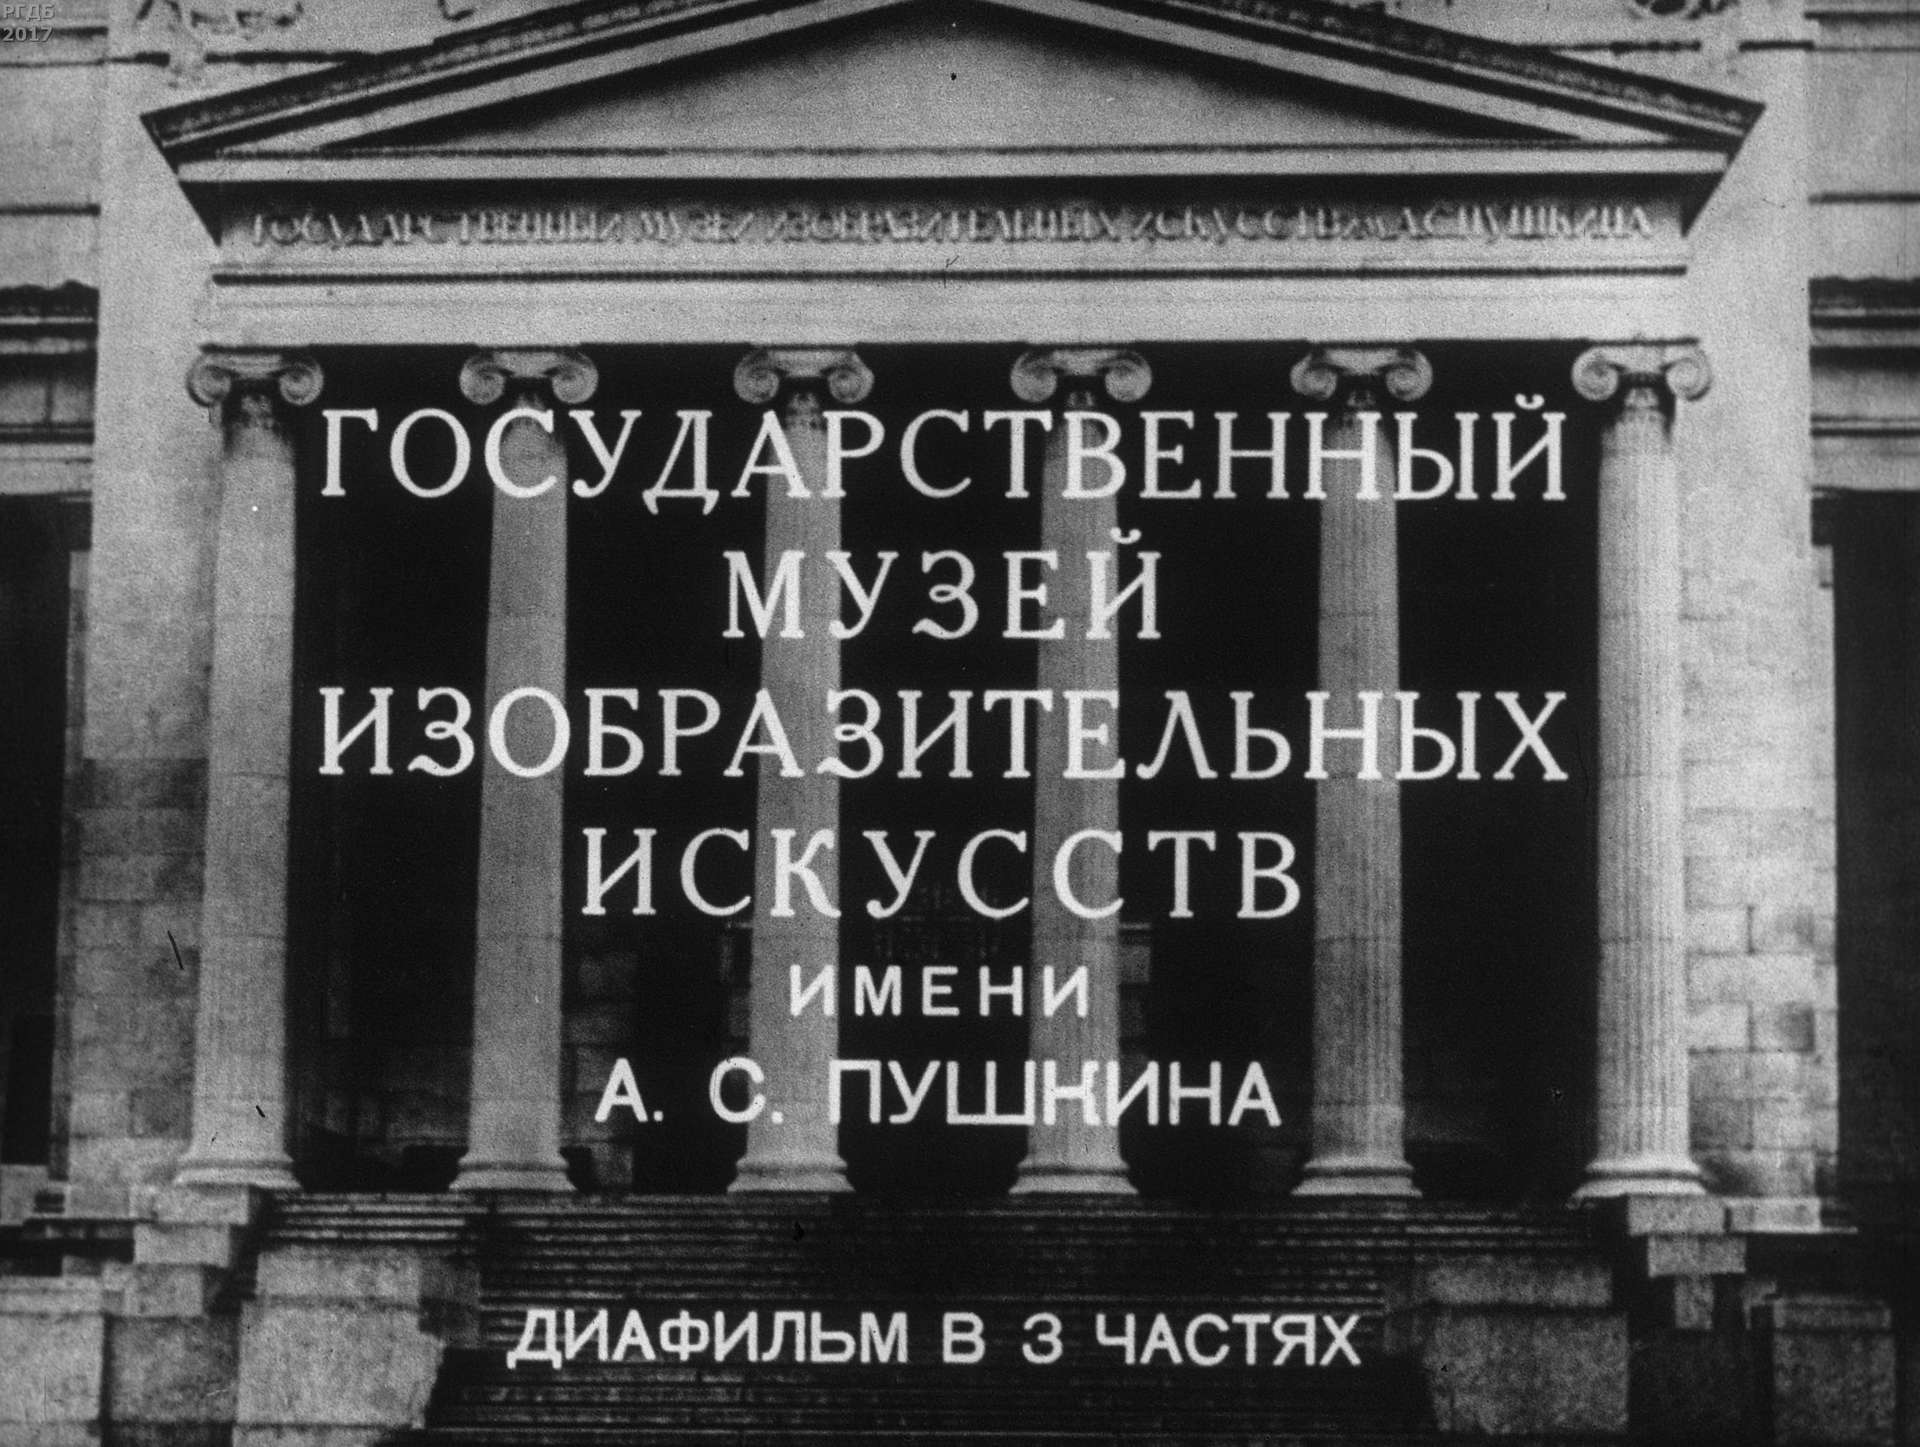 Государственный музей изобразительных искусств имени А. С. Пушкина. Ч. 3: Картинная галерея